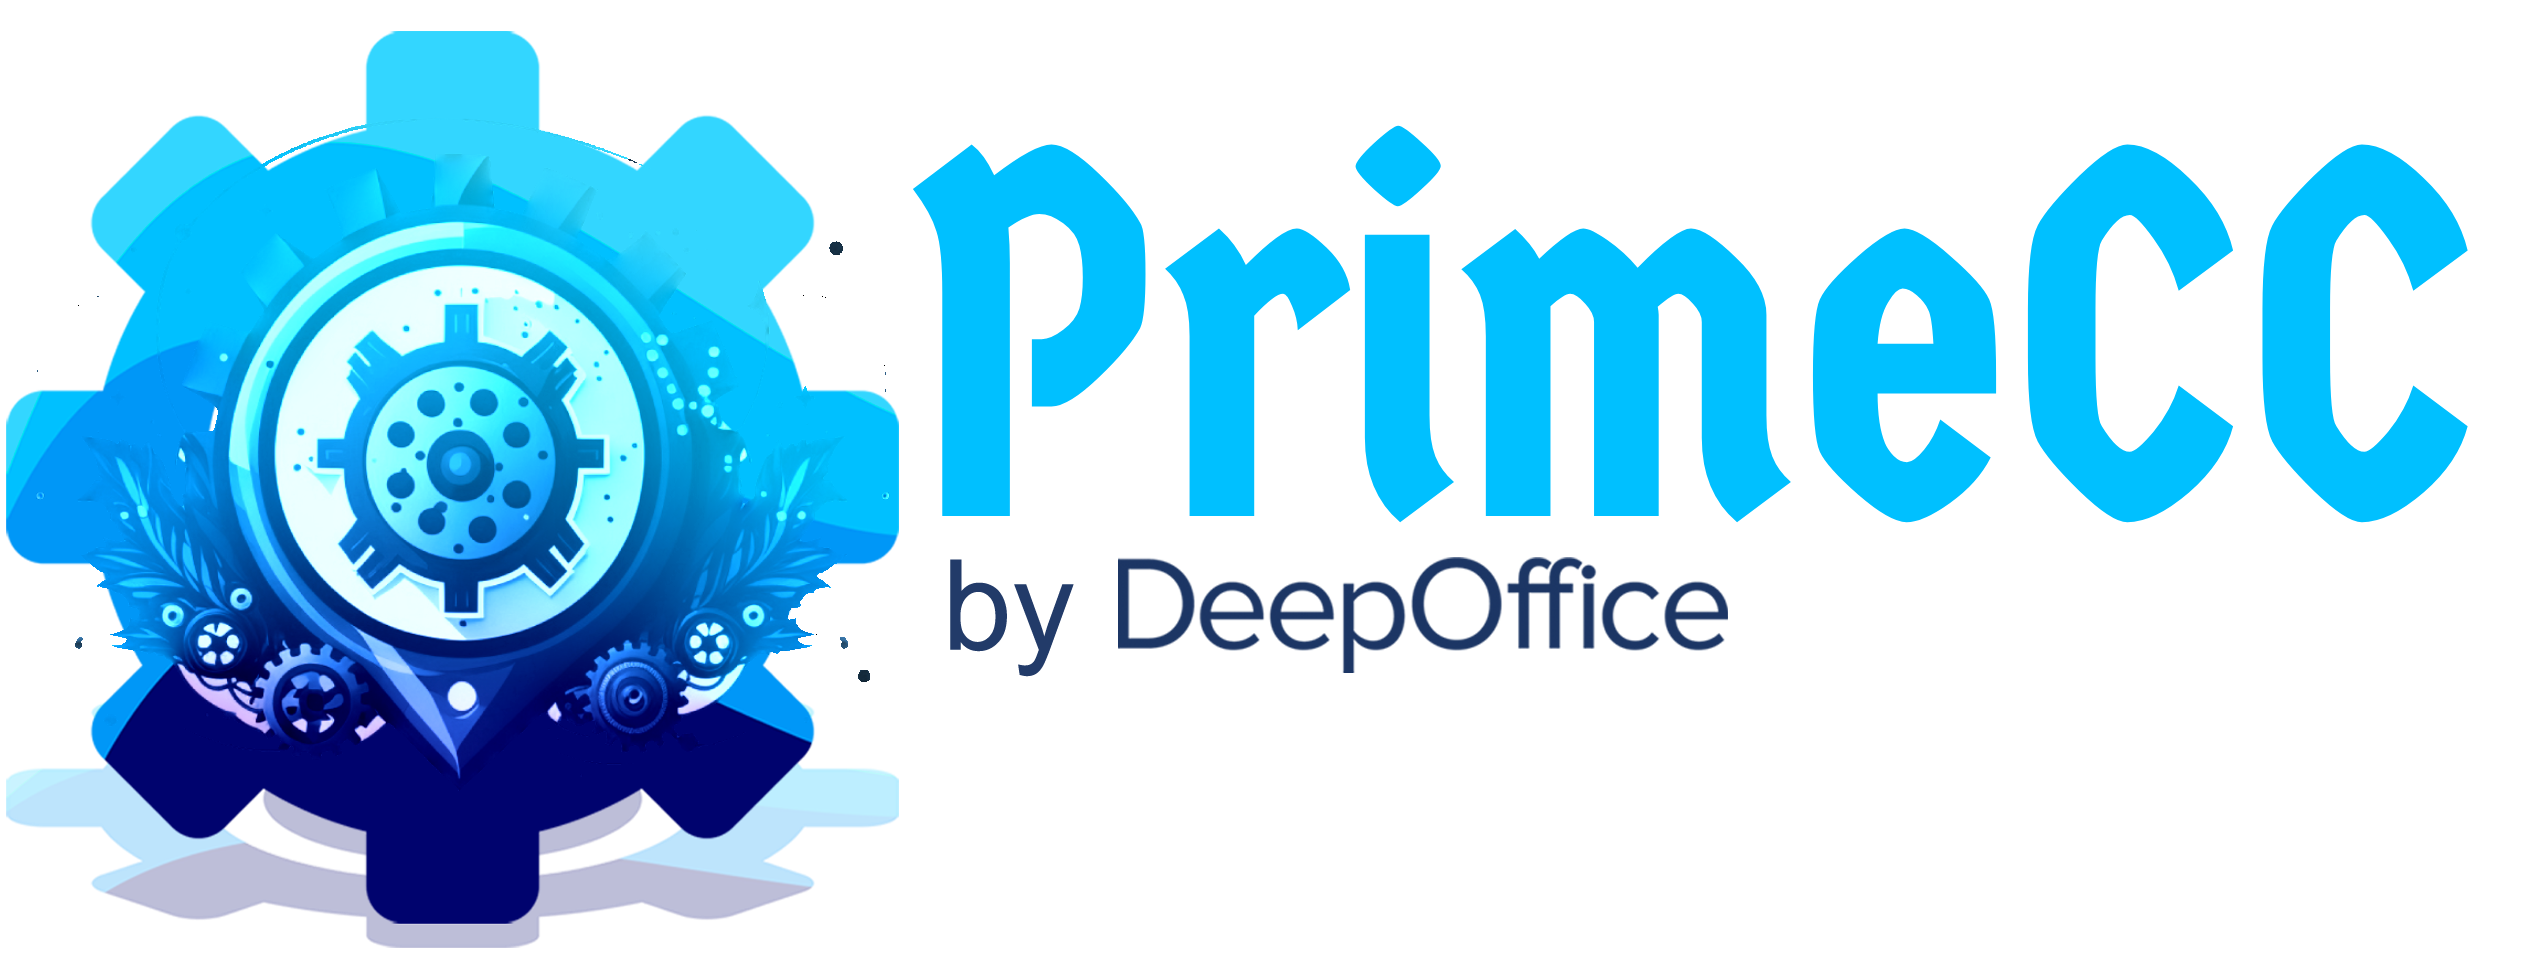 primecc-logo